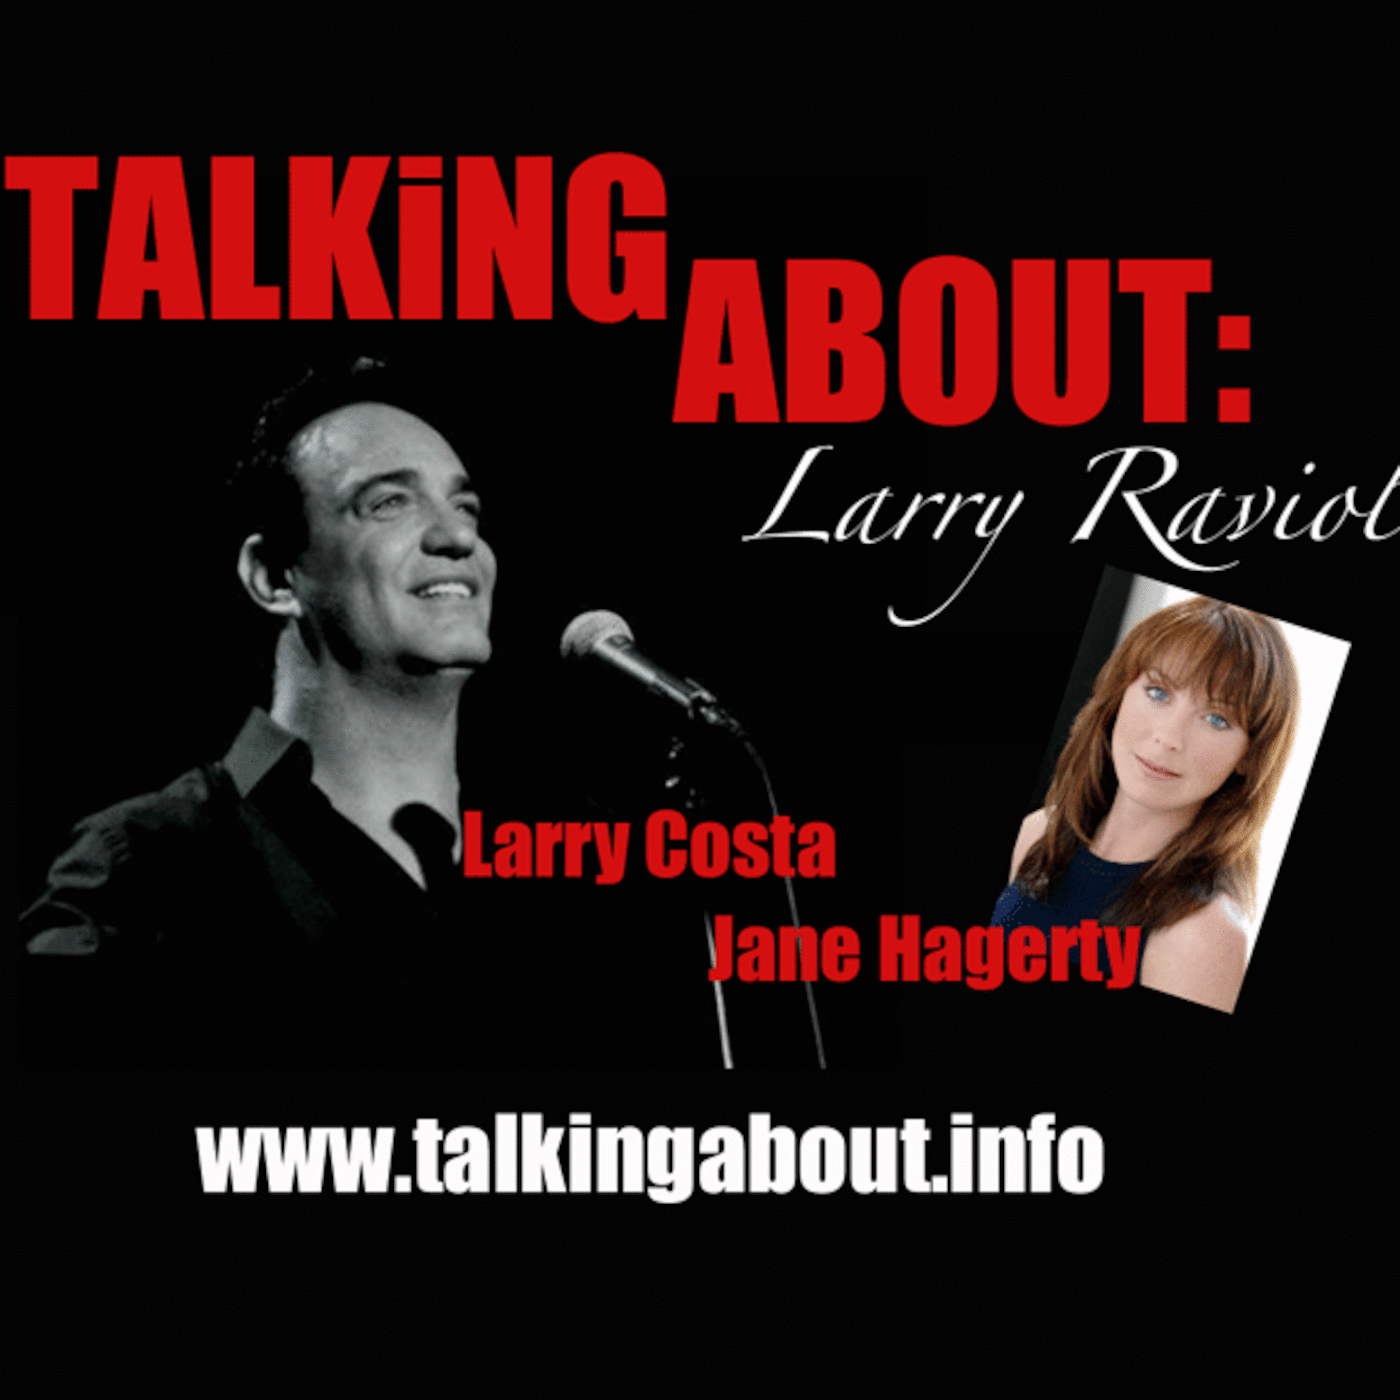 Talking About: Larry Ravioli